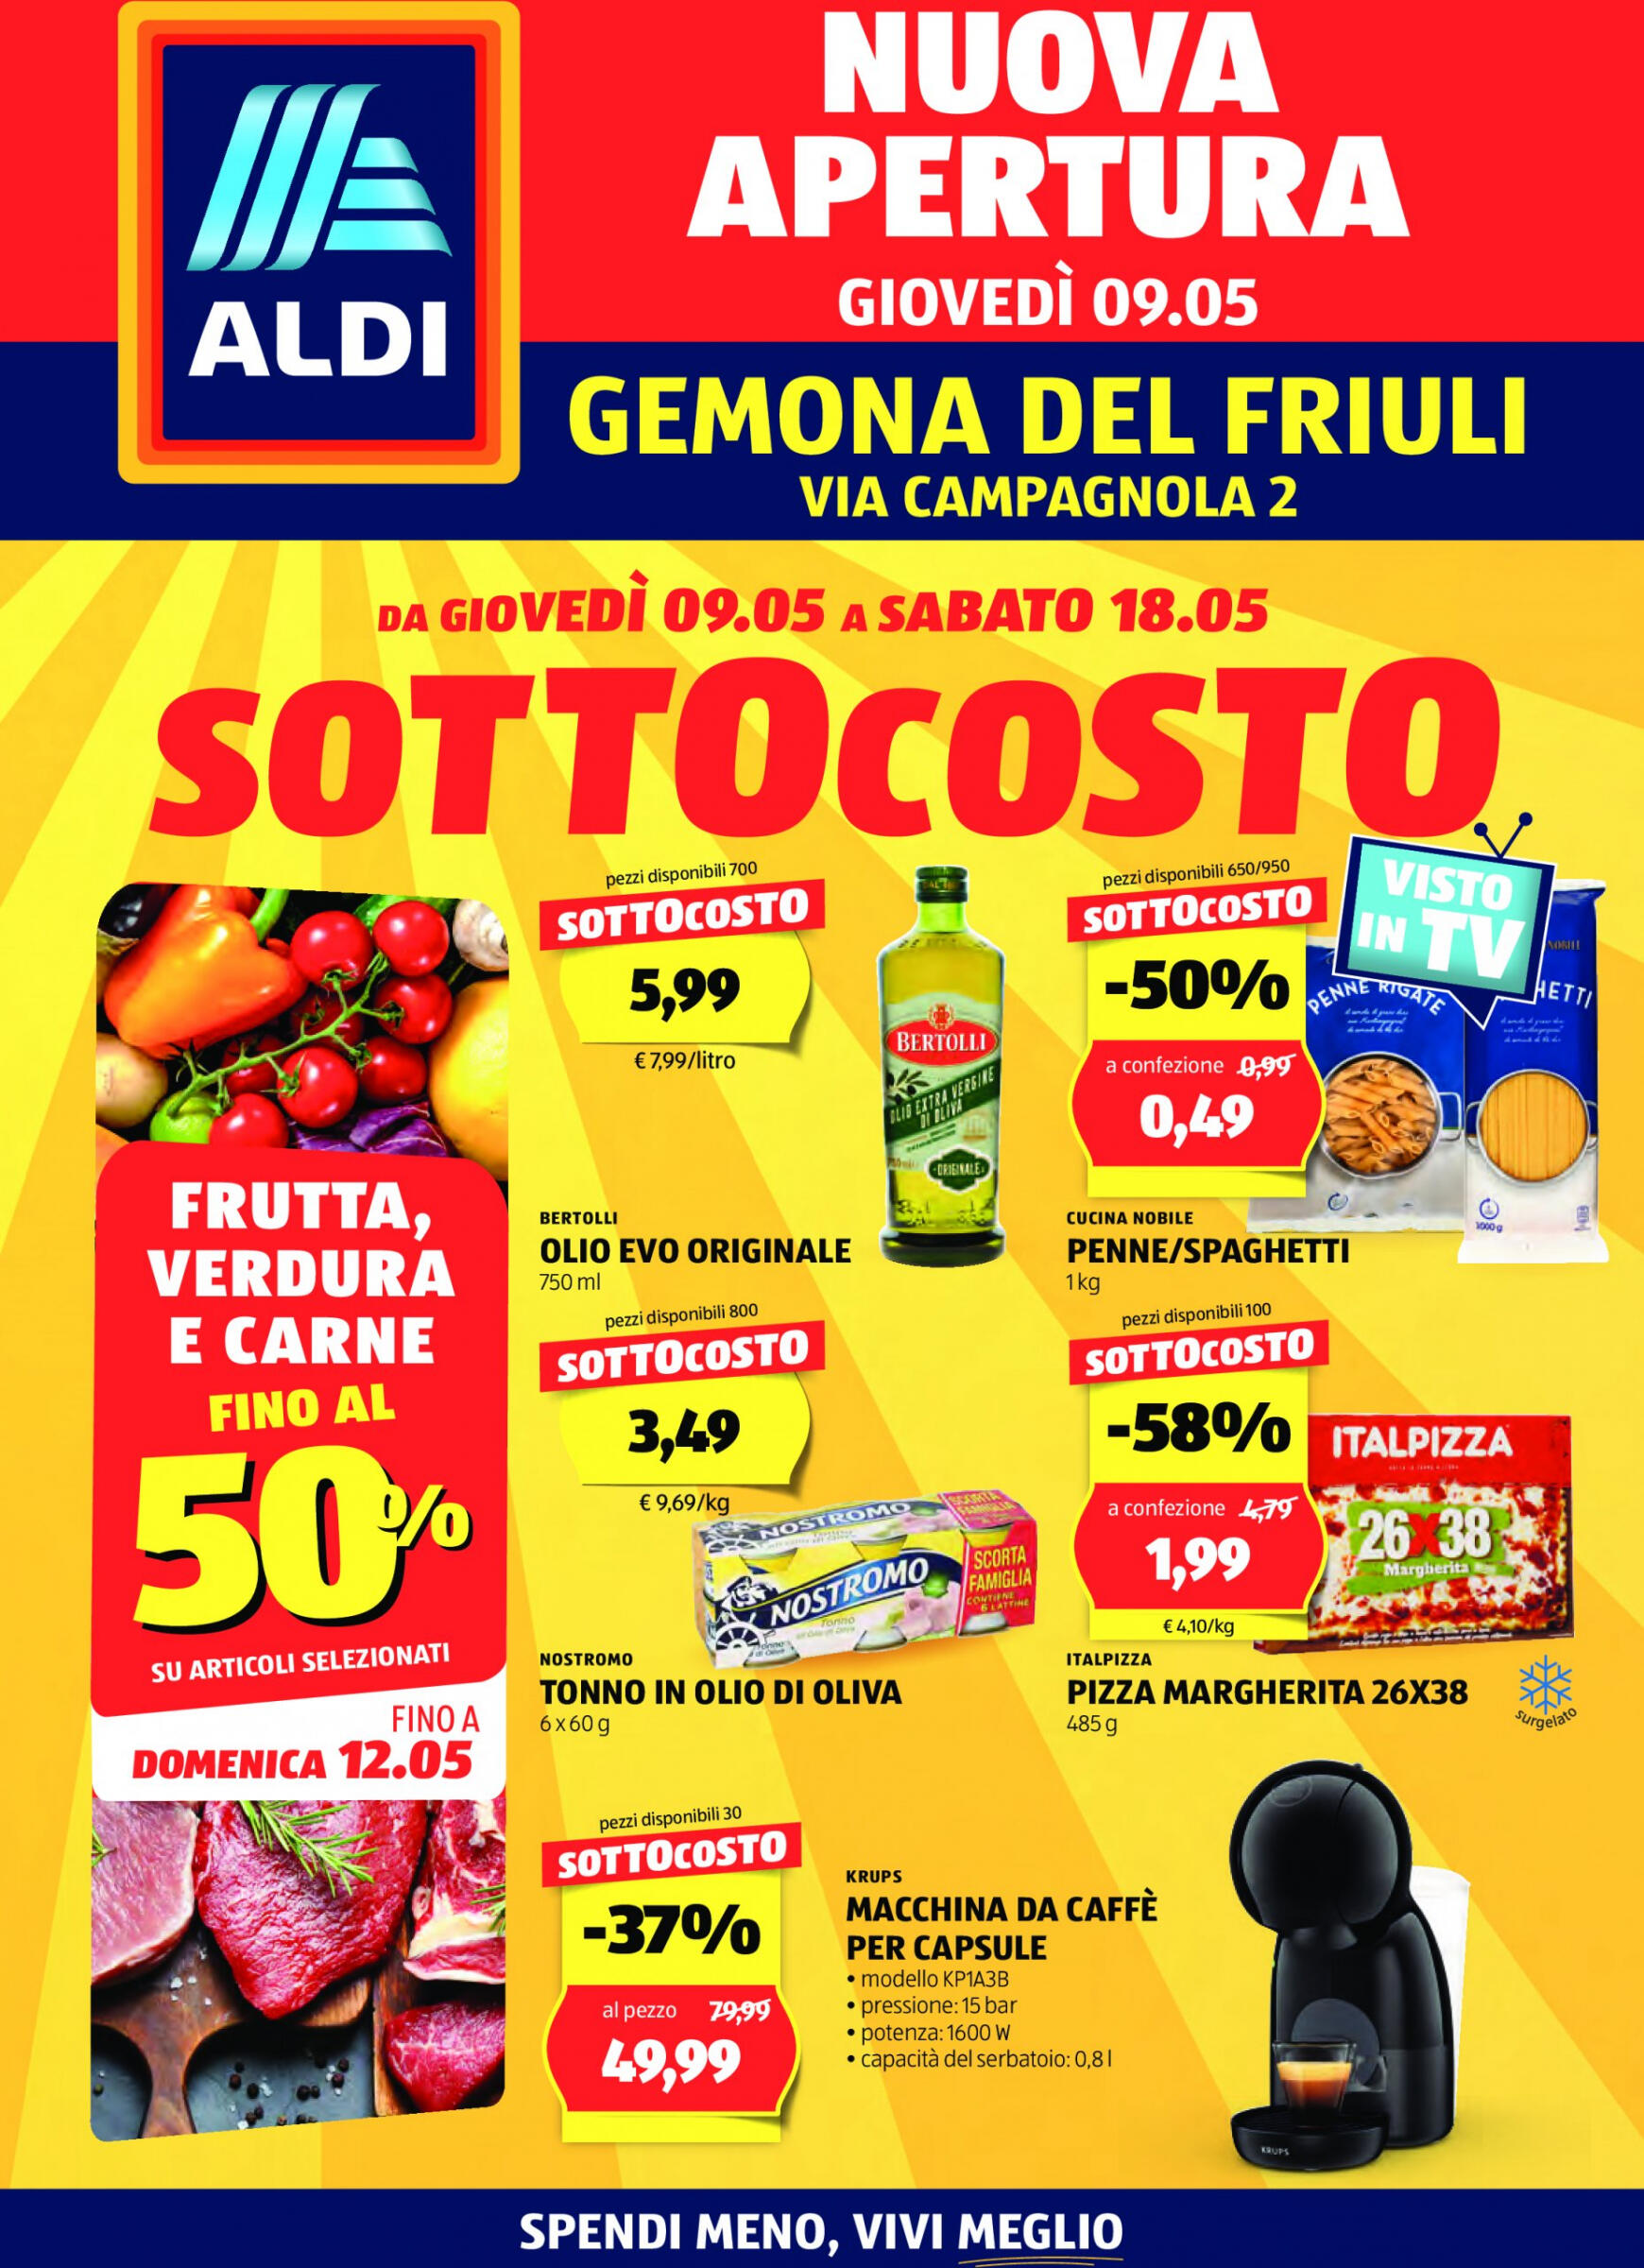 aldi - Nuovo volantino ALDI - Offerte al Prezzo ALDI per l'apertura a Gemona 09.05. - 18.05. - page: 1